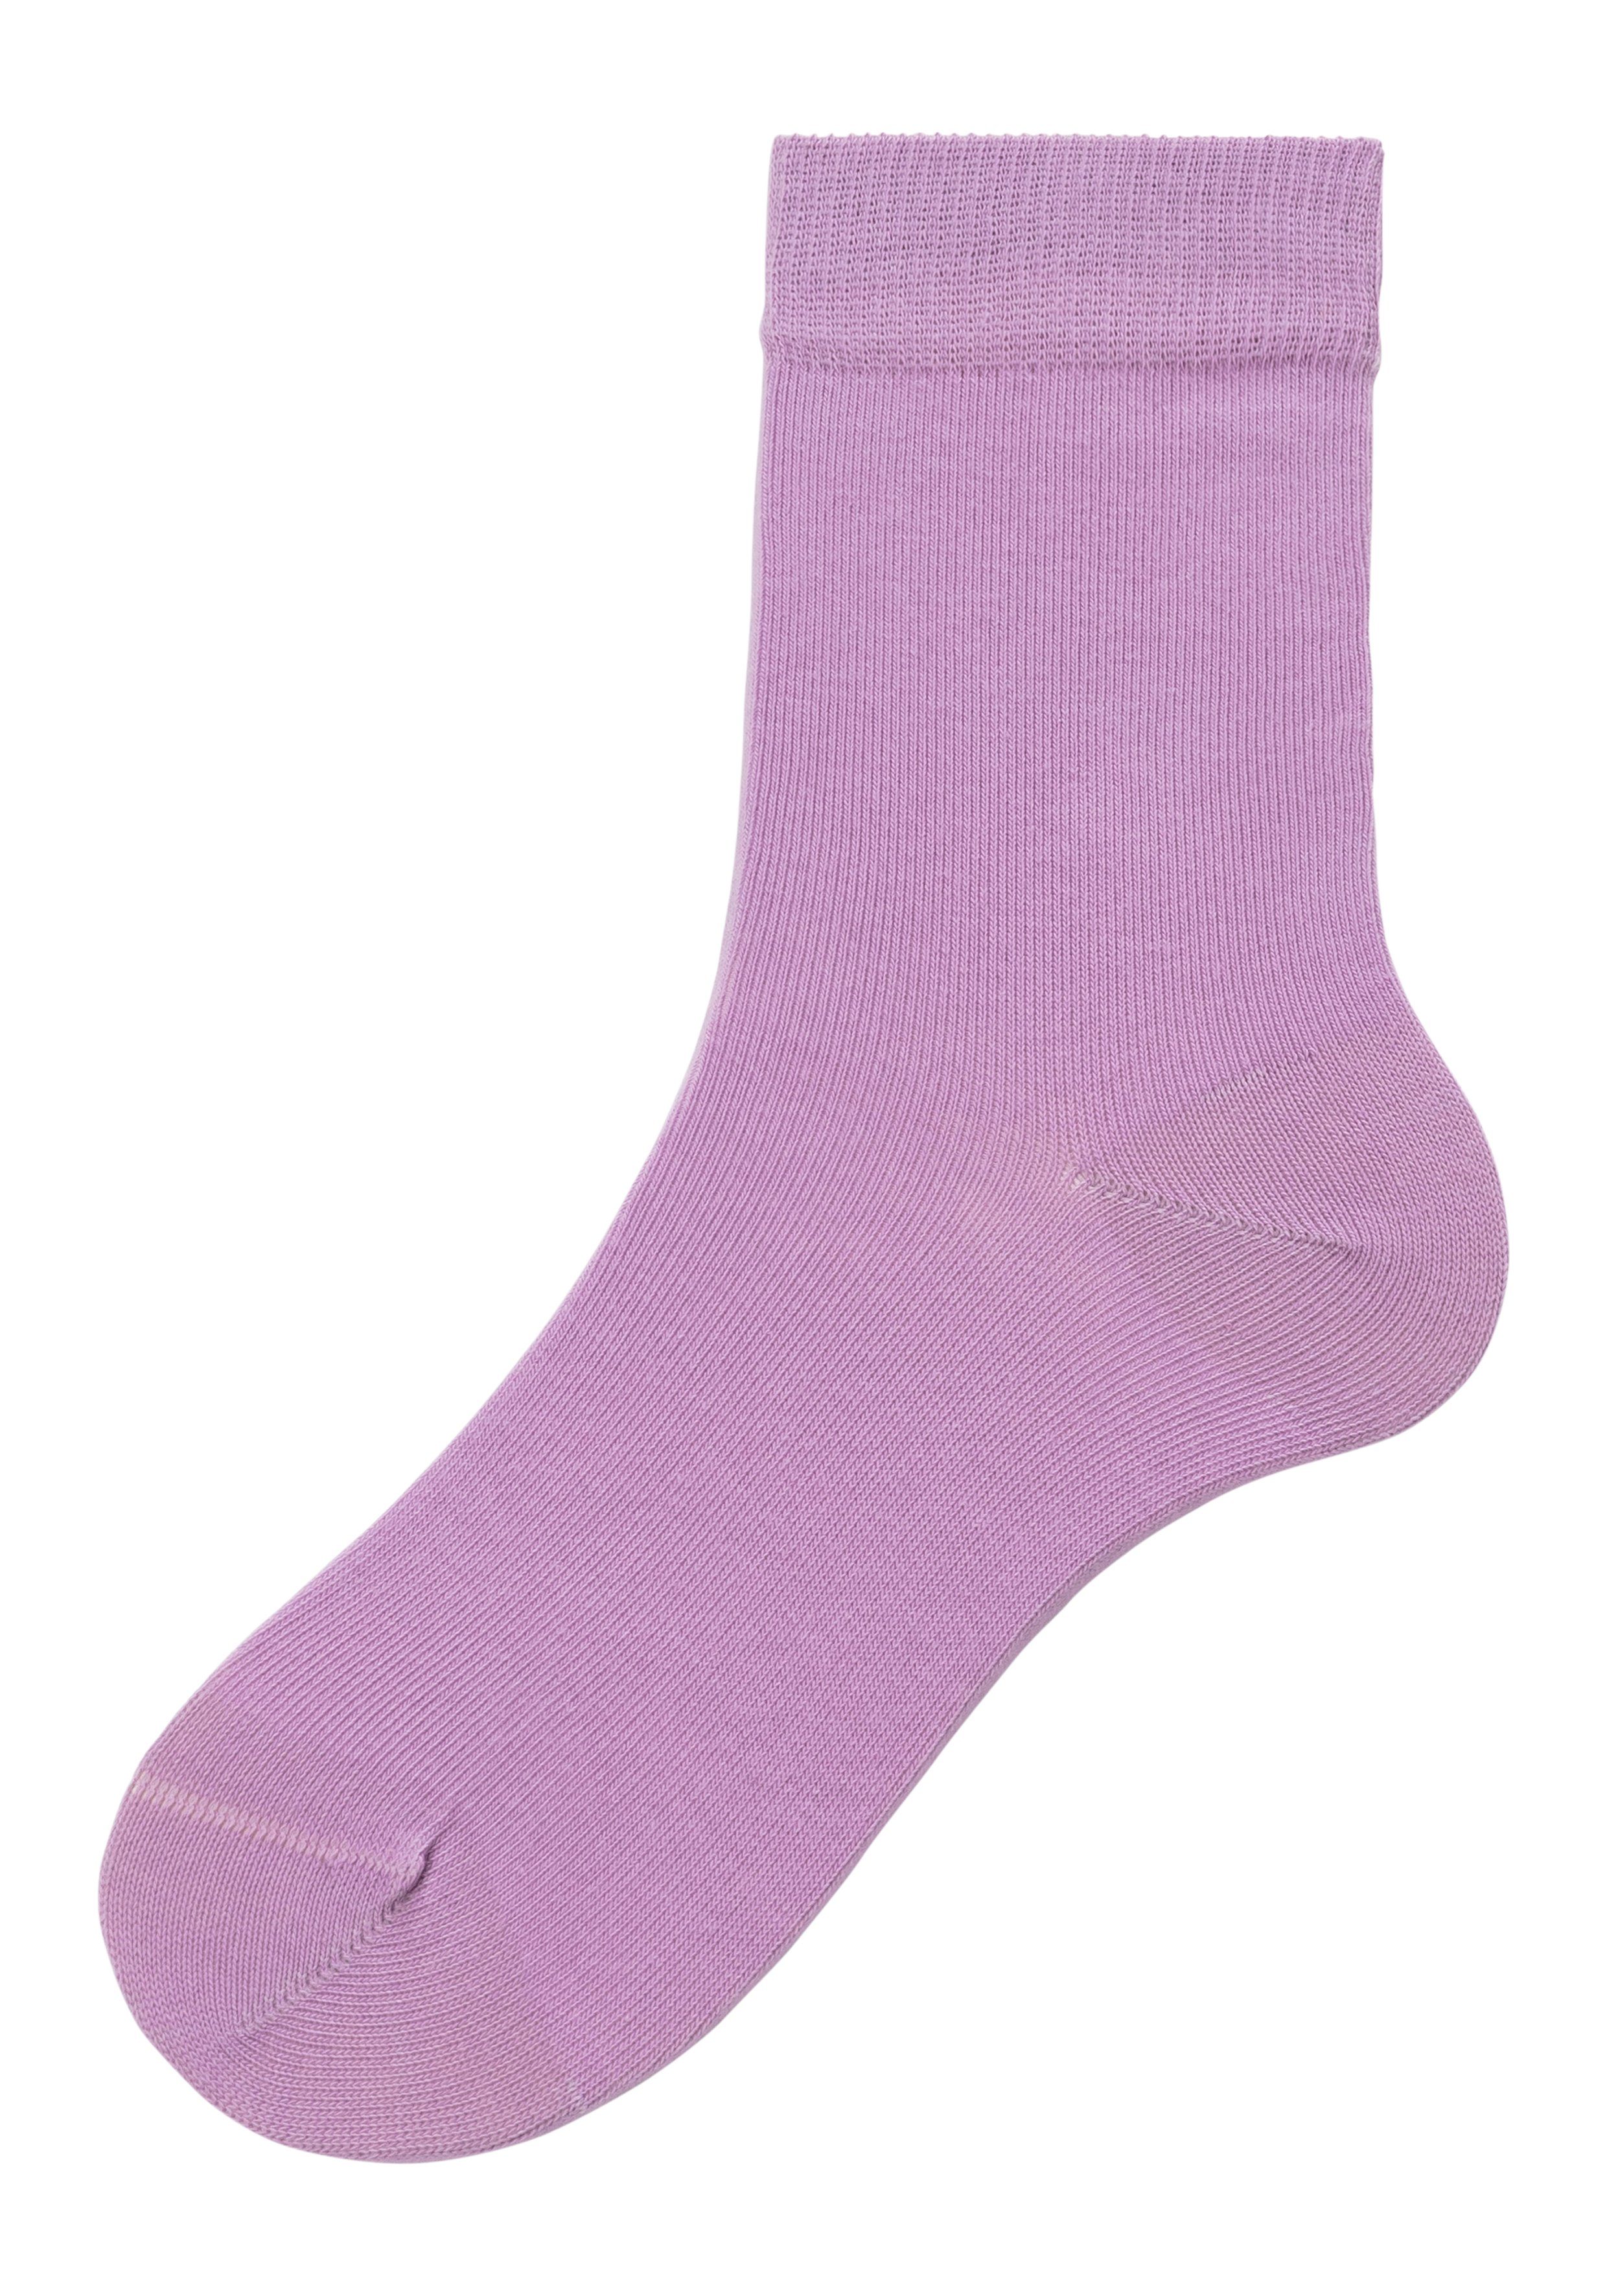 H.I.S Socken (Set, 4-Paar) 1x in 1x 1x blau, Farbzusammenstellungen unterschiedlichen flieder, pink, bordeaux 1x